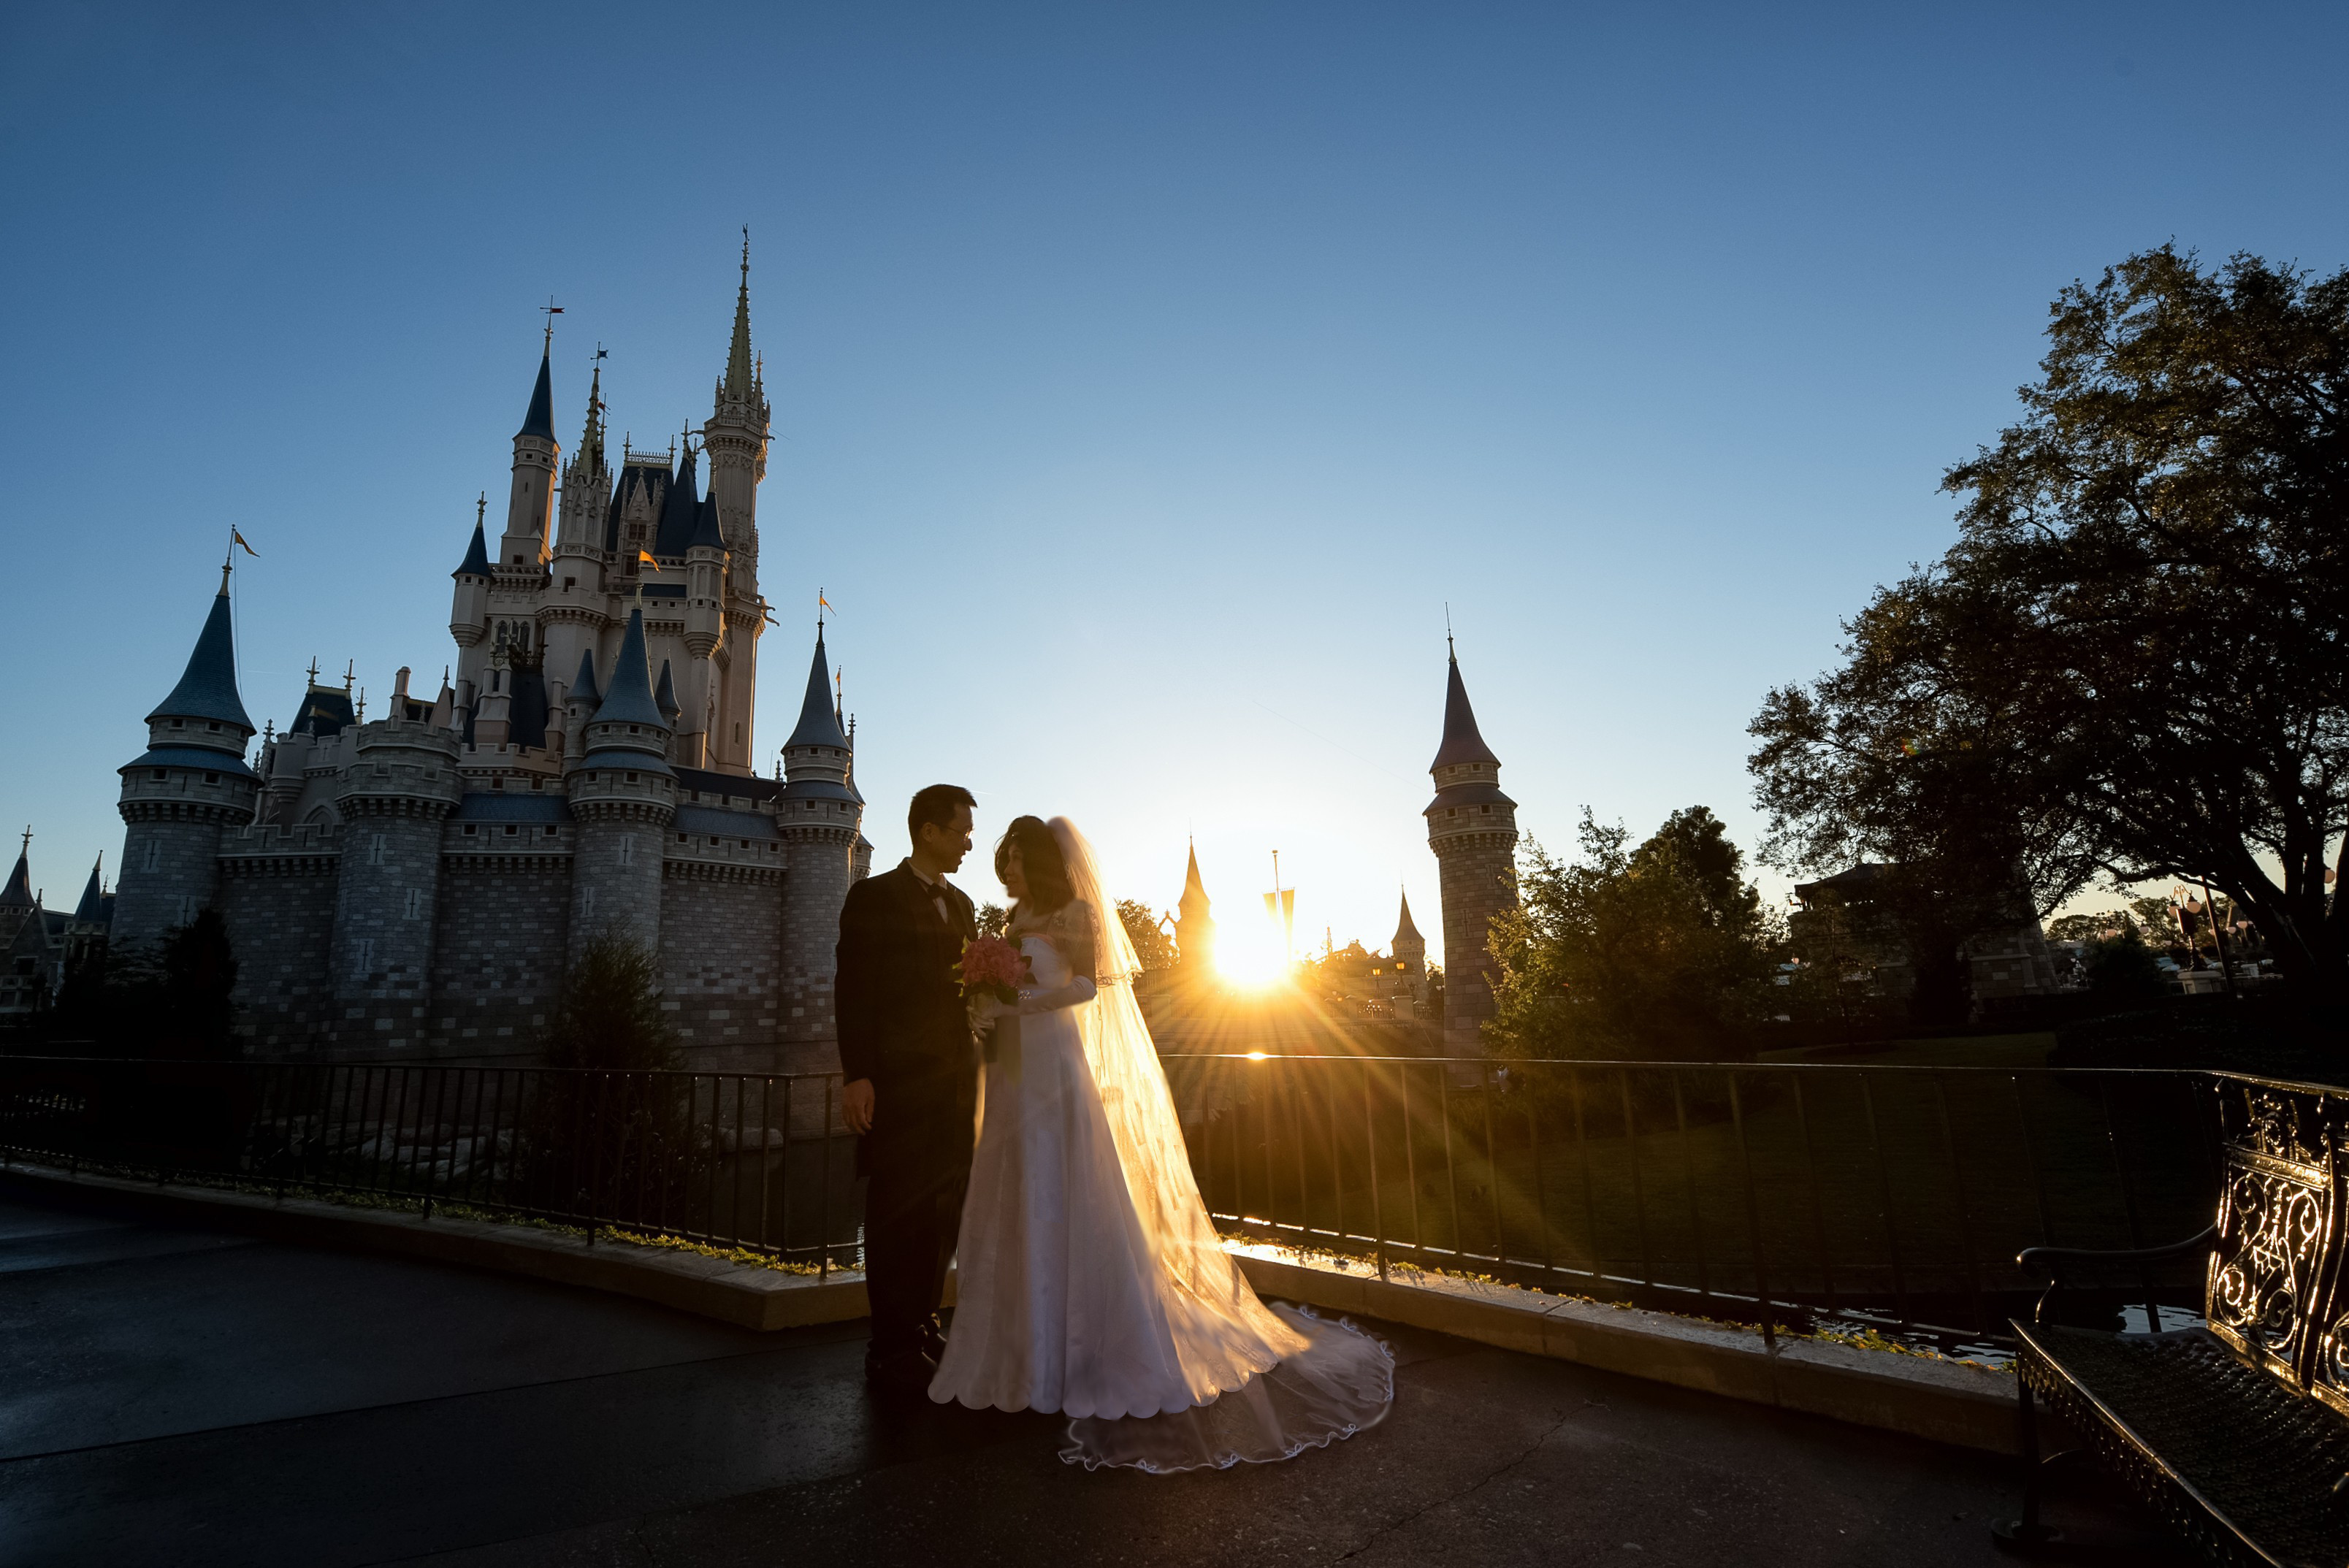 A wedding portrait taken in front of a Disney castle